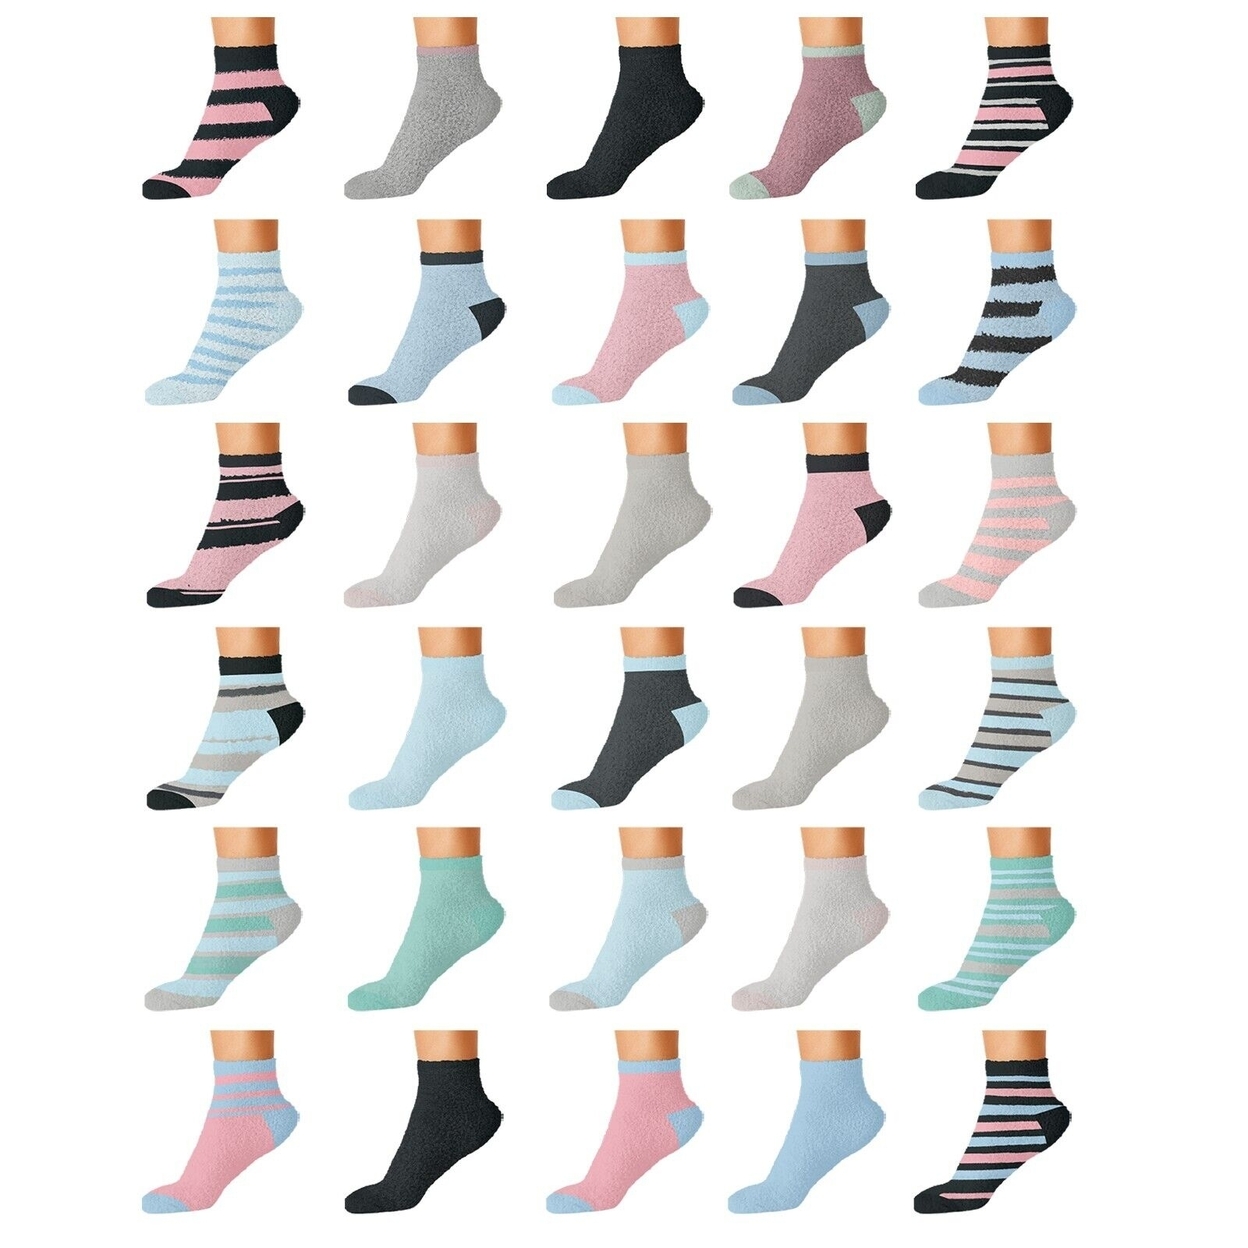 10-Pairs: Women's Cozy Warm Fuzzy Fluffy Crew Socks - Striped